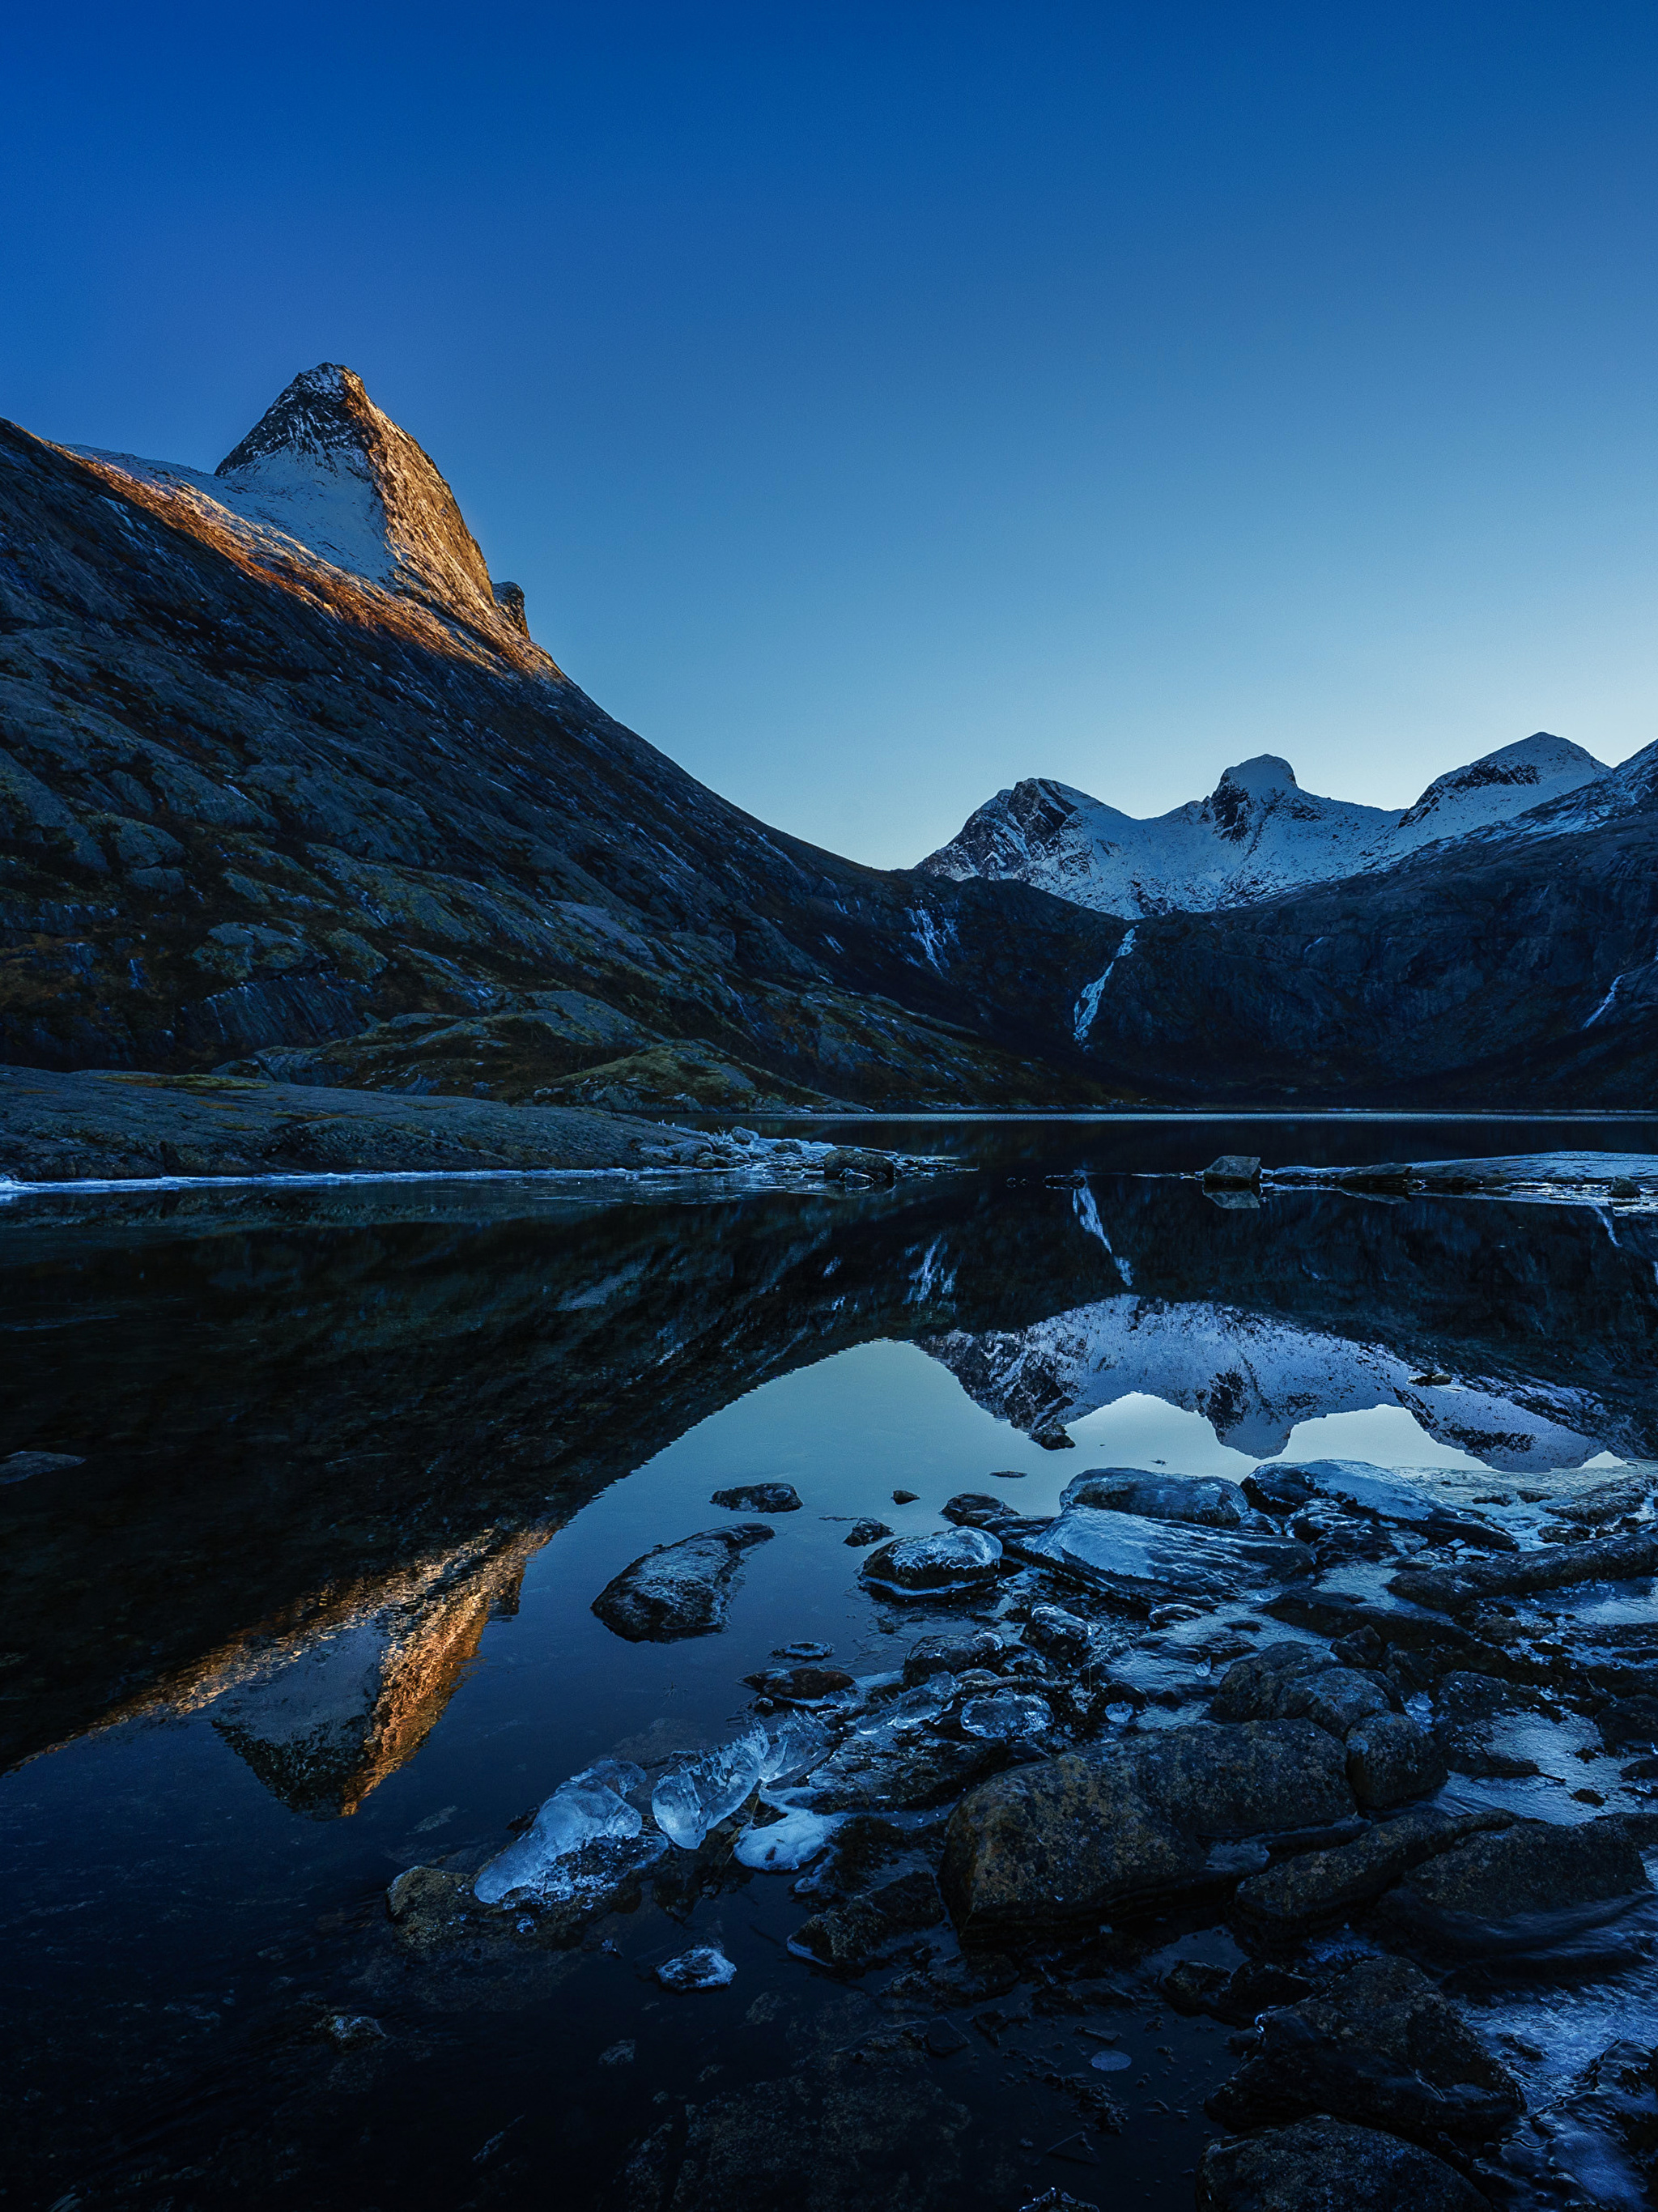 Фотографии размером 1024 2048 пикселей сохранили. Горы Норвегии. Пейзажи Норвегии.